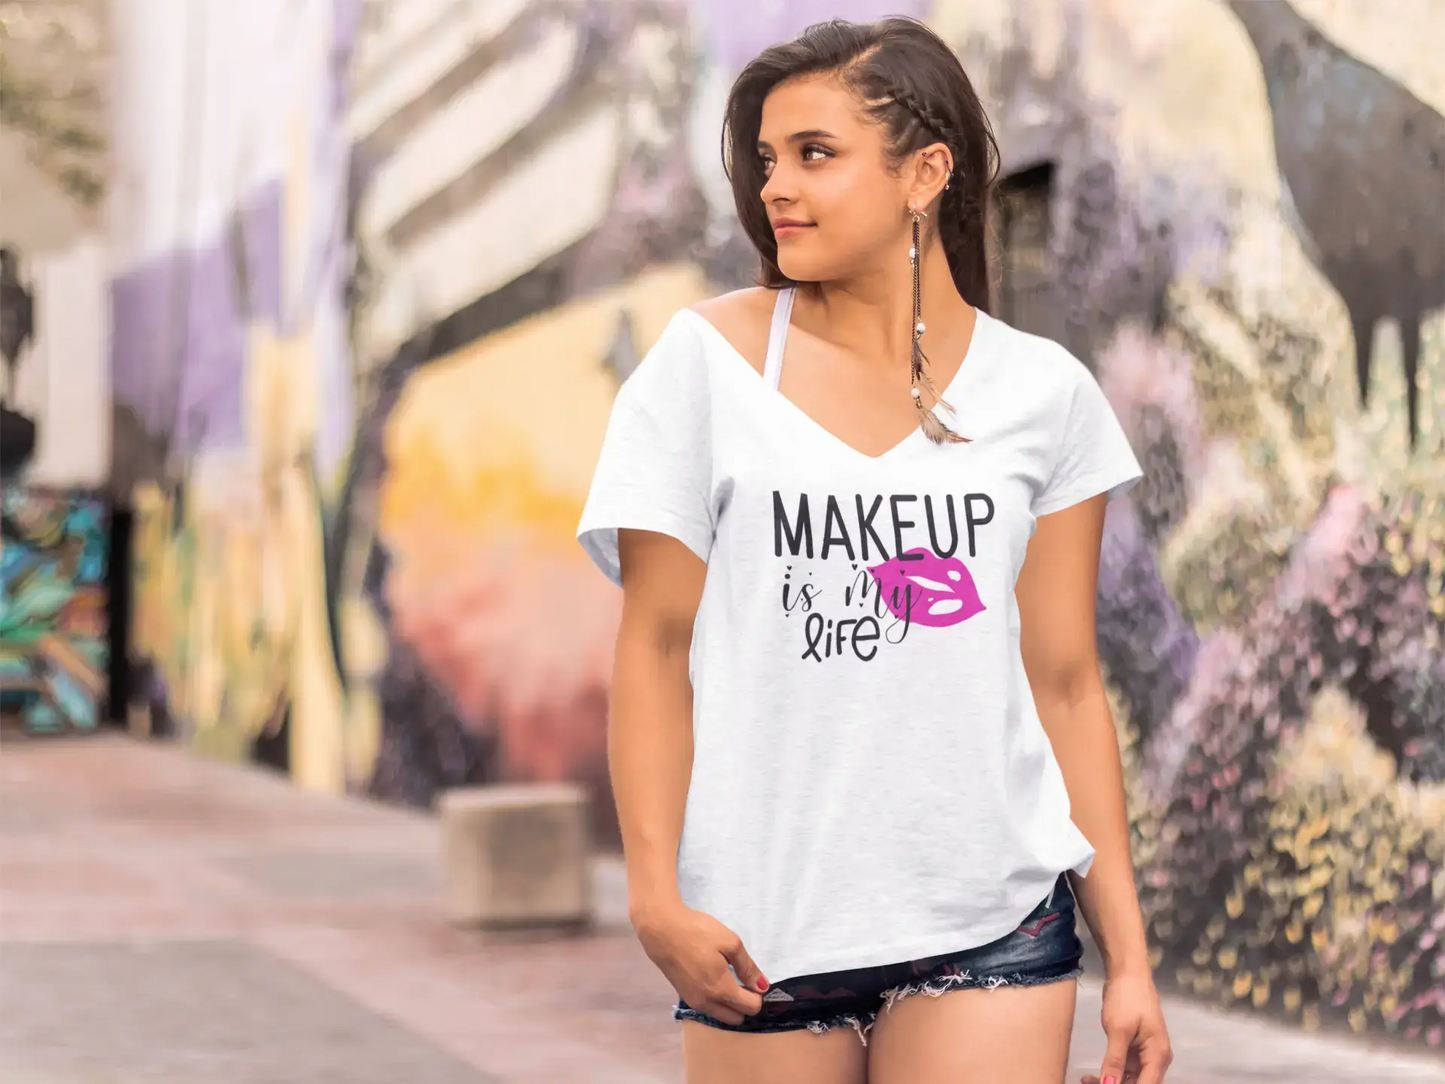 T-shirt fantaisie ULTRABASIC pour femmes, Make Up is My Life - Citation drôle de fille